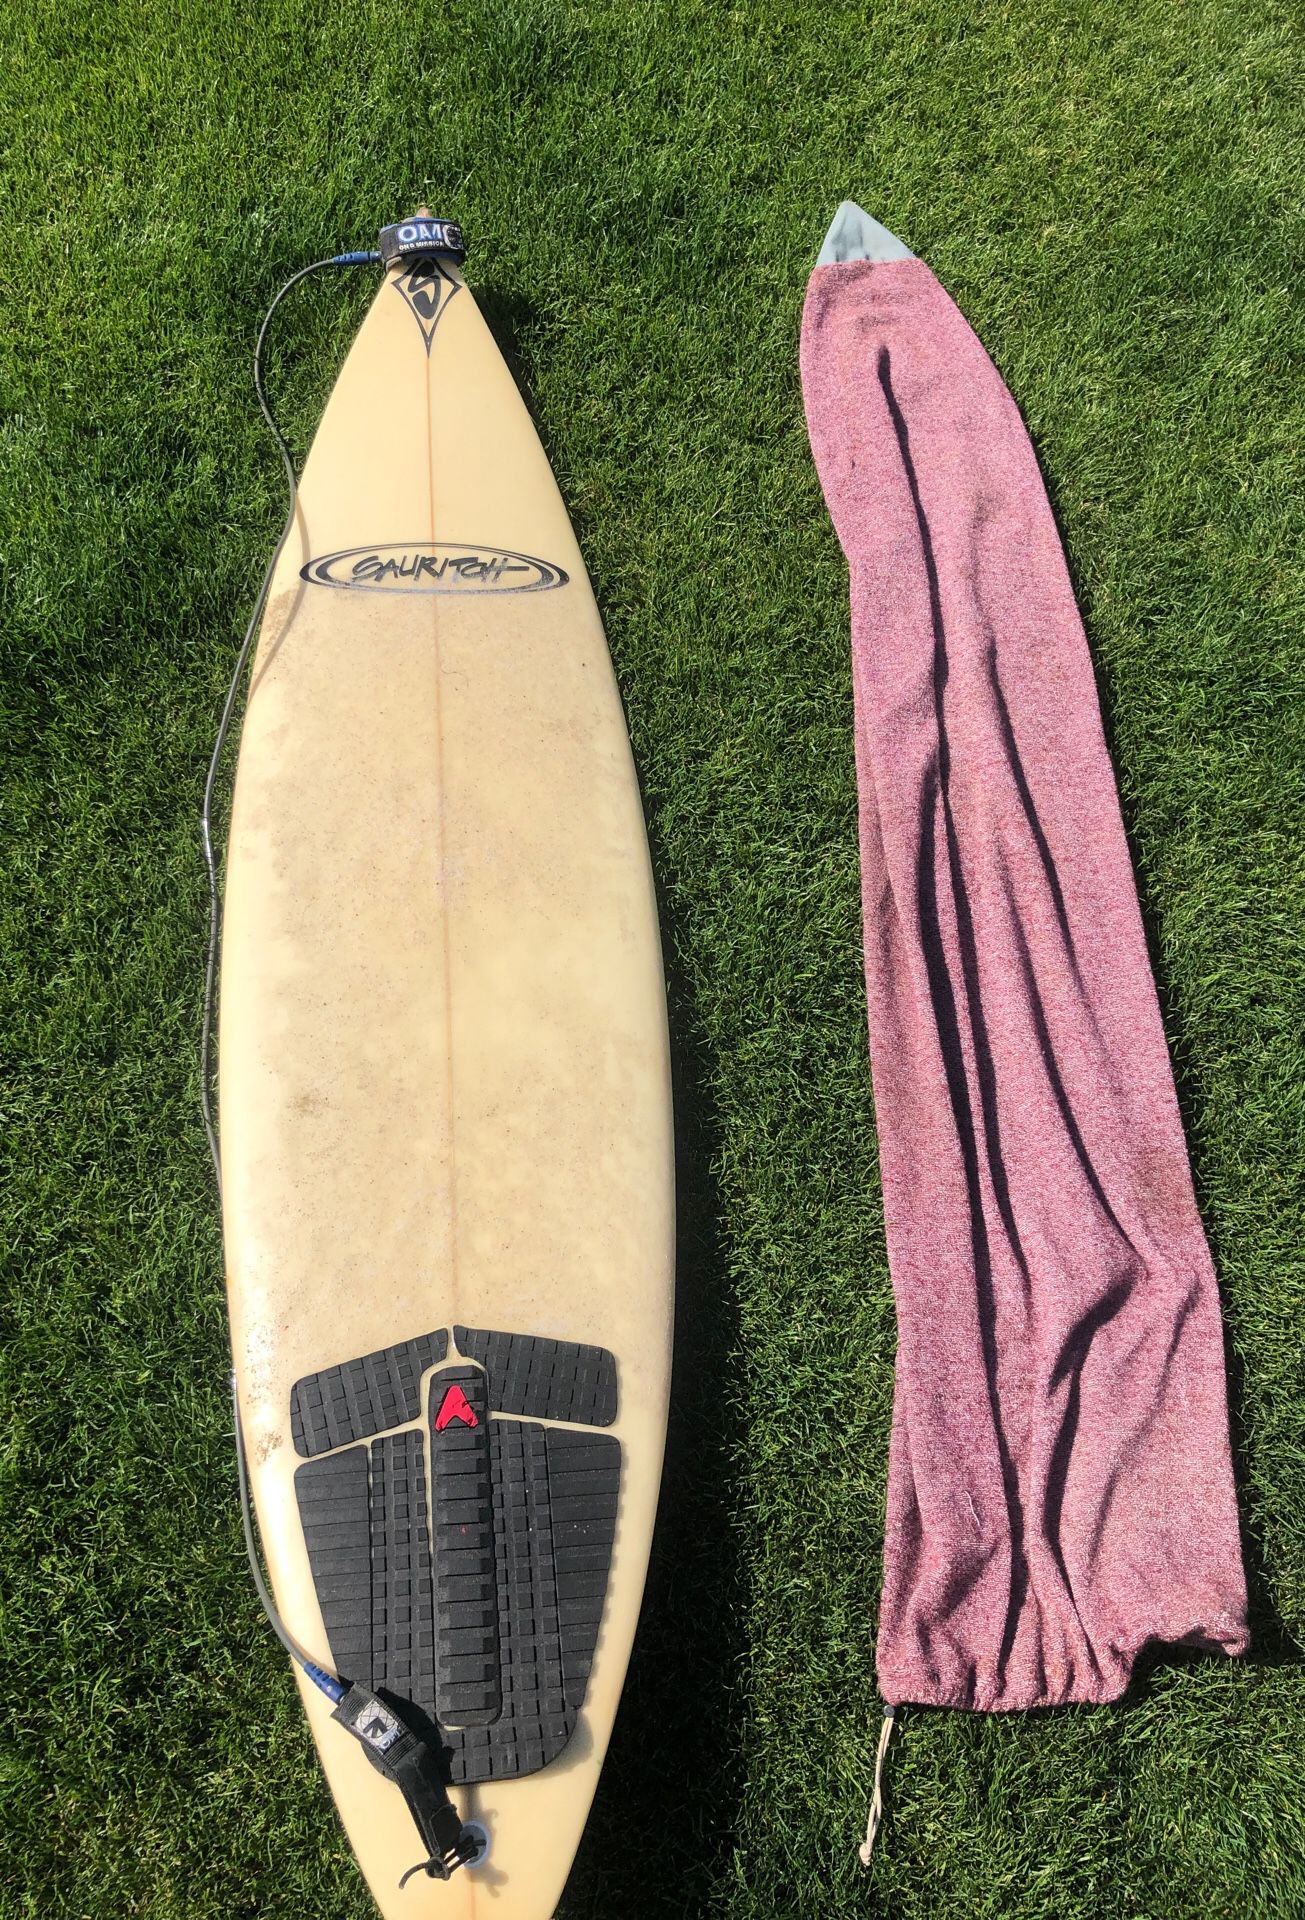 Sauritch surfboard